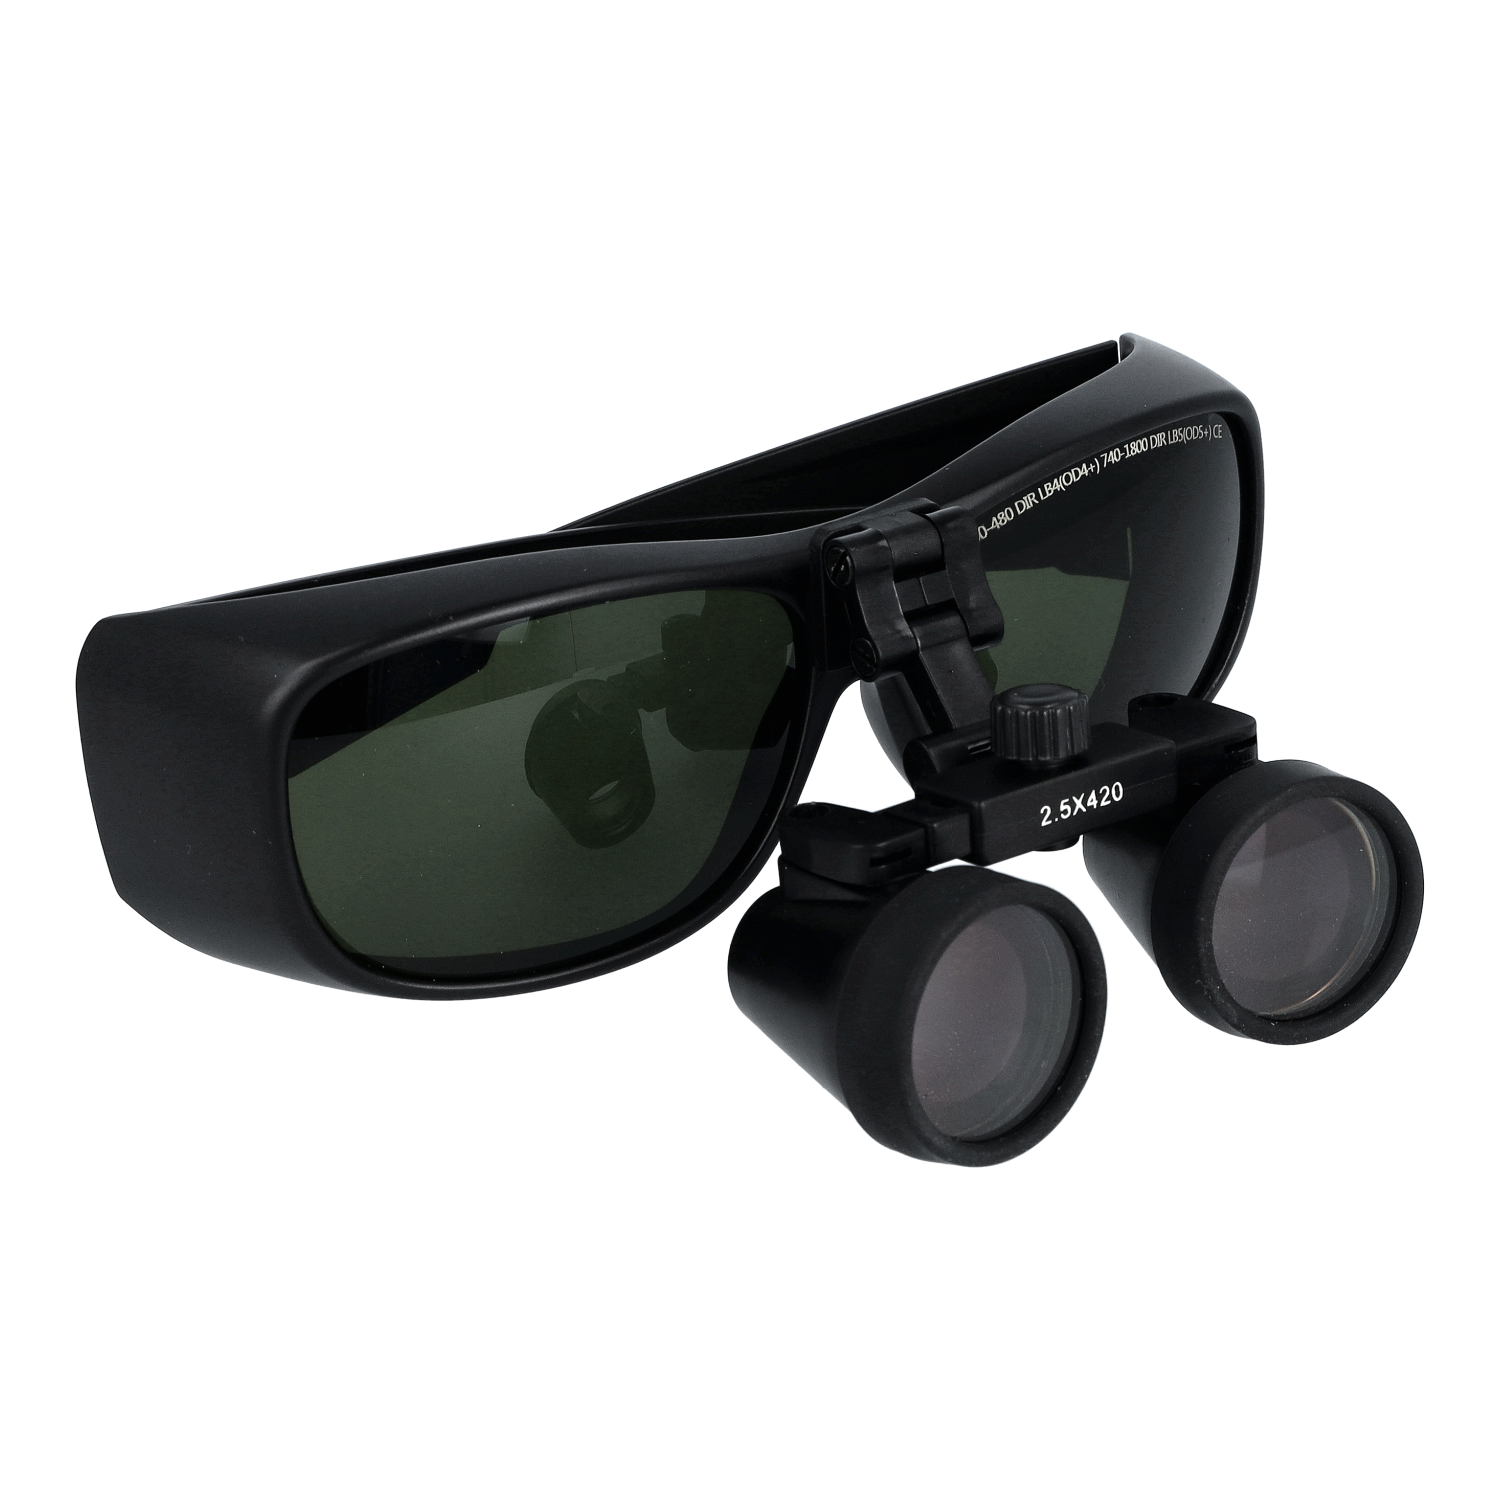 Laserschutz-Lupenbrille für PACT 500 & blue DUO laser 